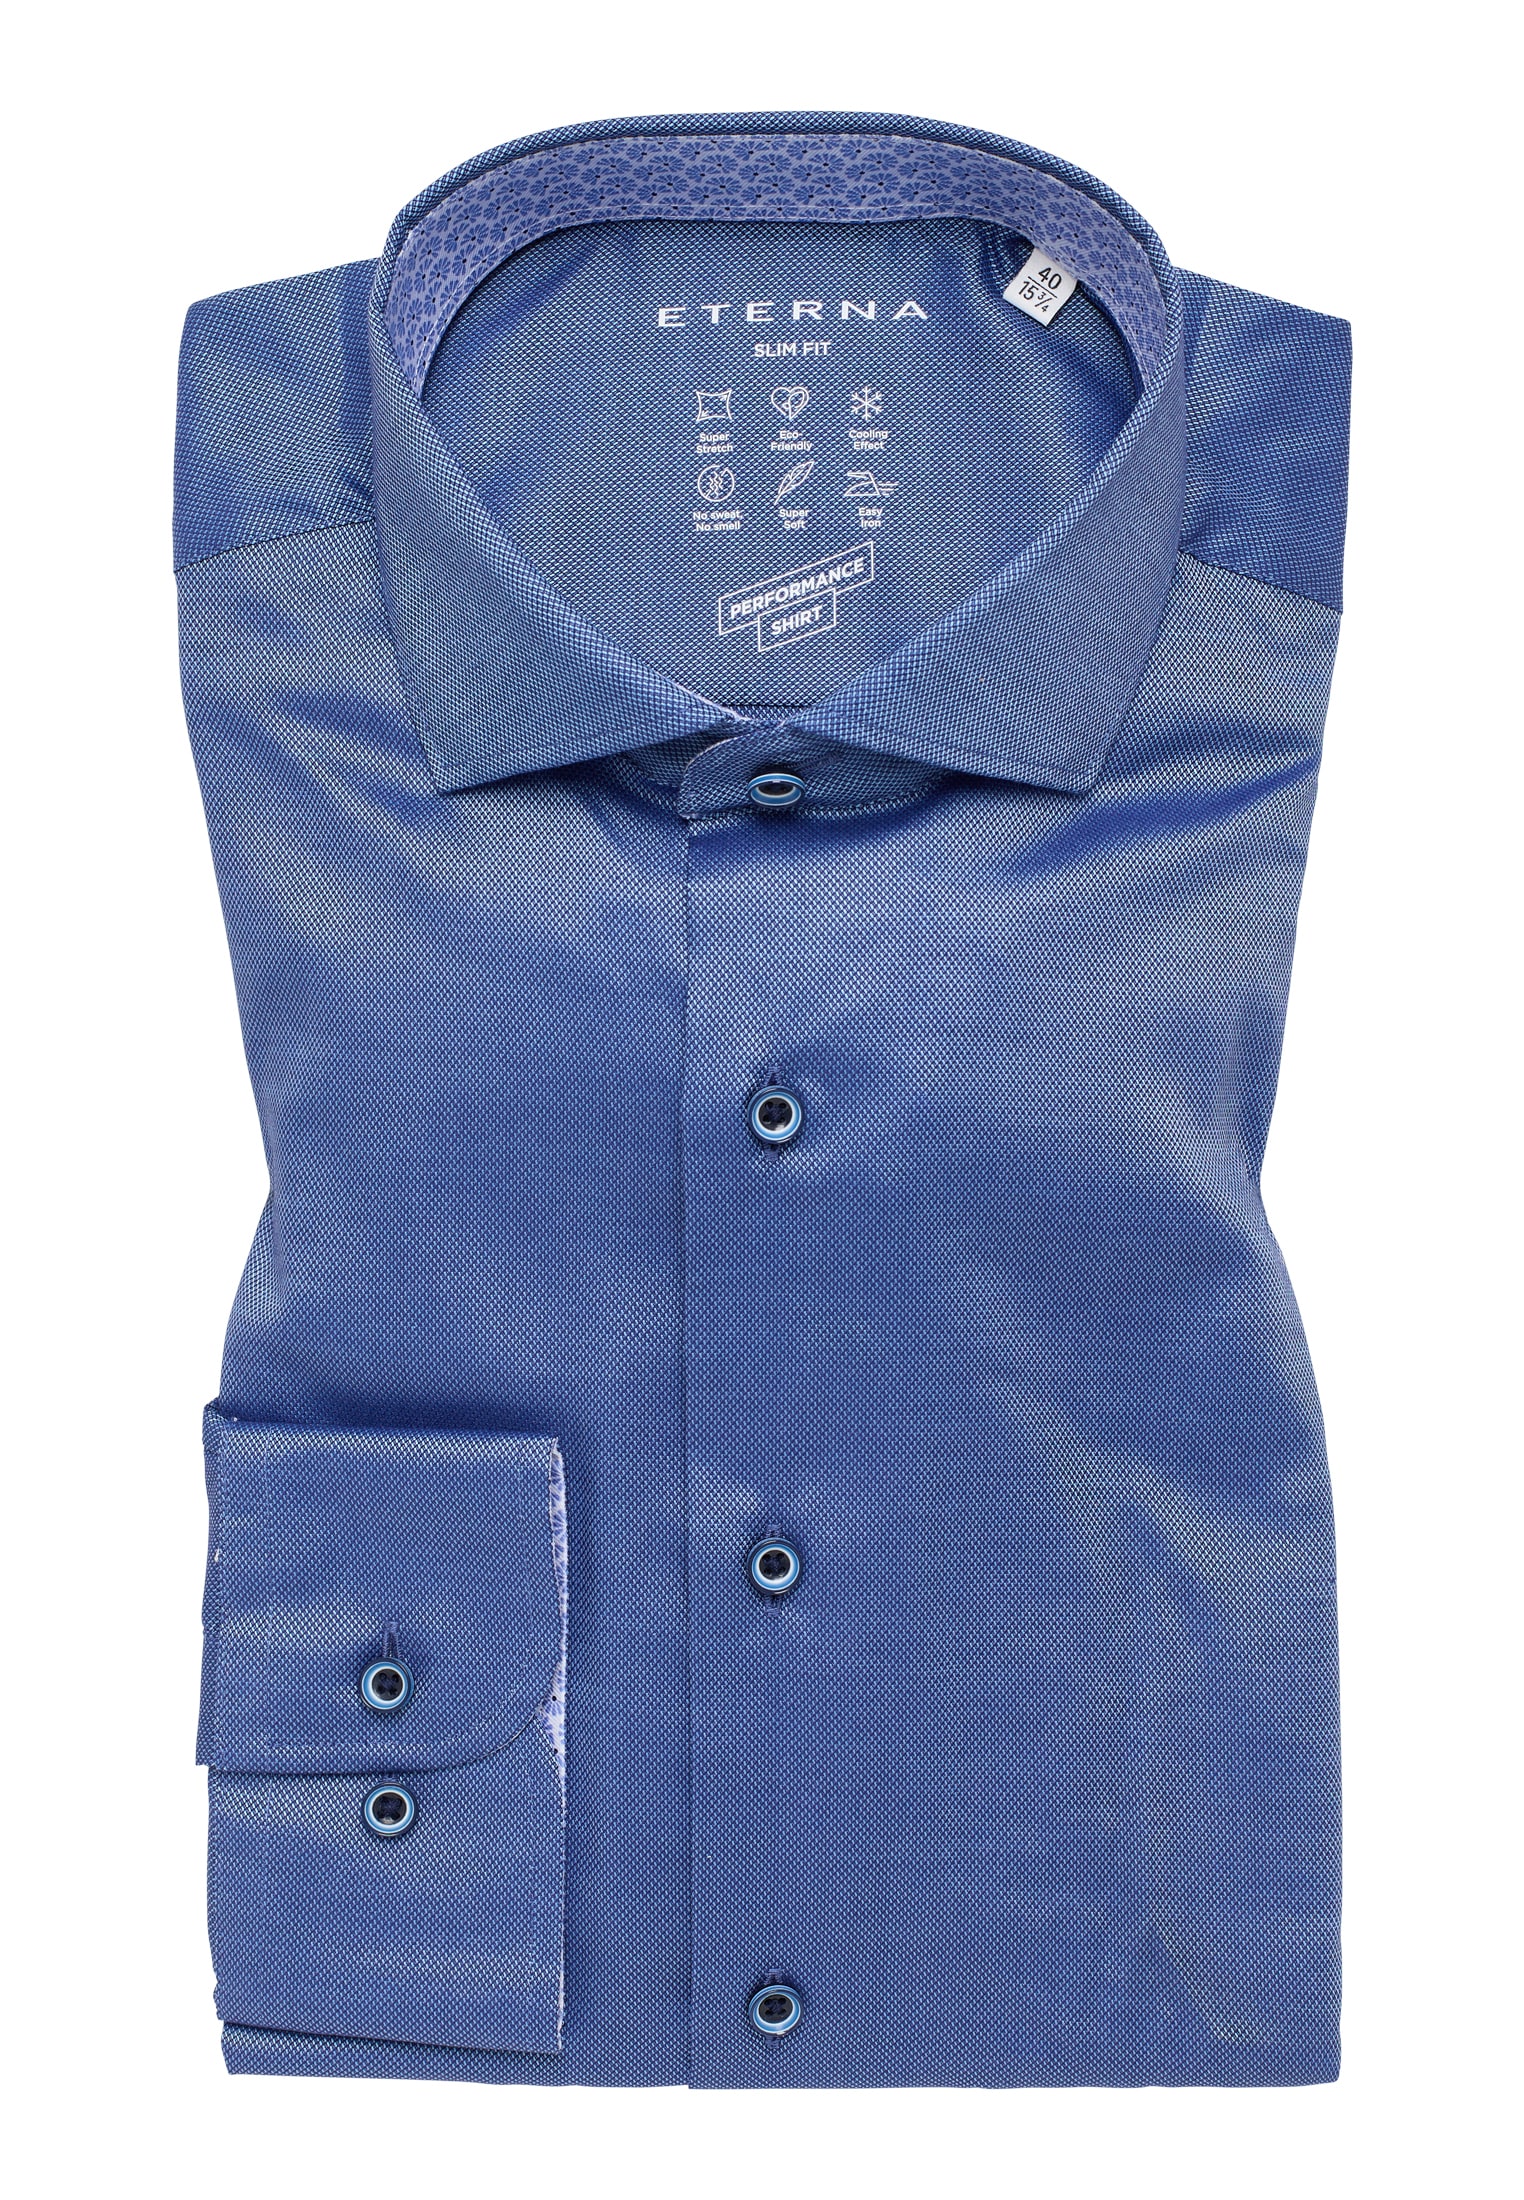 SLIM FIT Performance Shirt in | Langarm blau strukturiert | 1SH12542-01-41-41-1/1 | 41 | blau